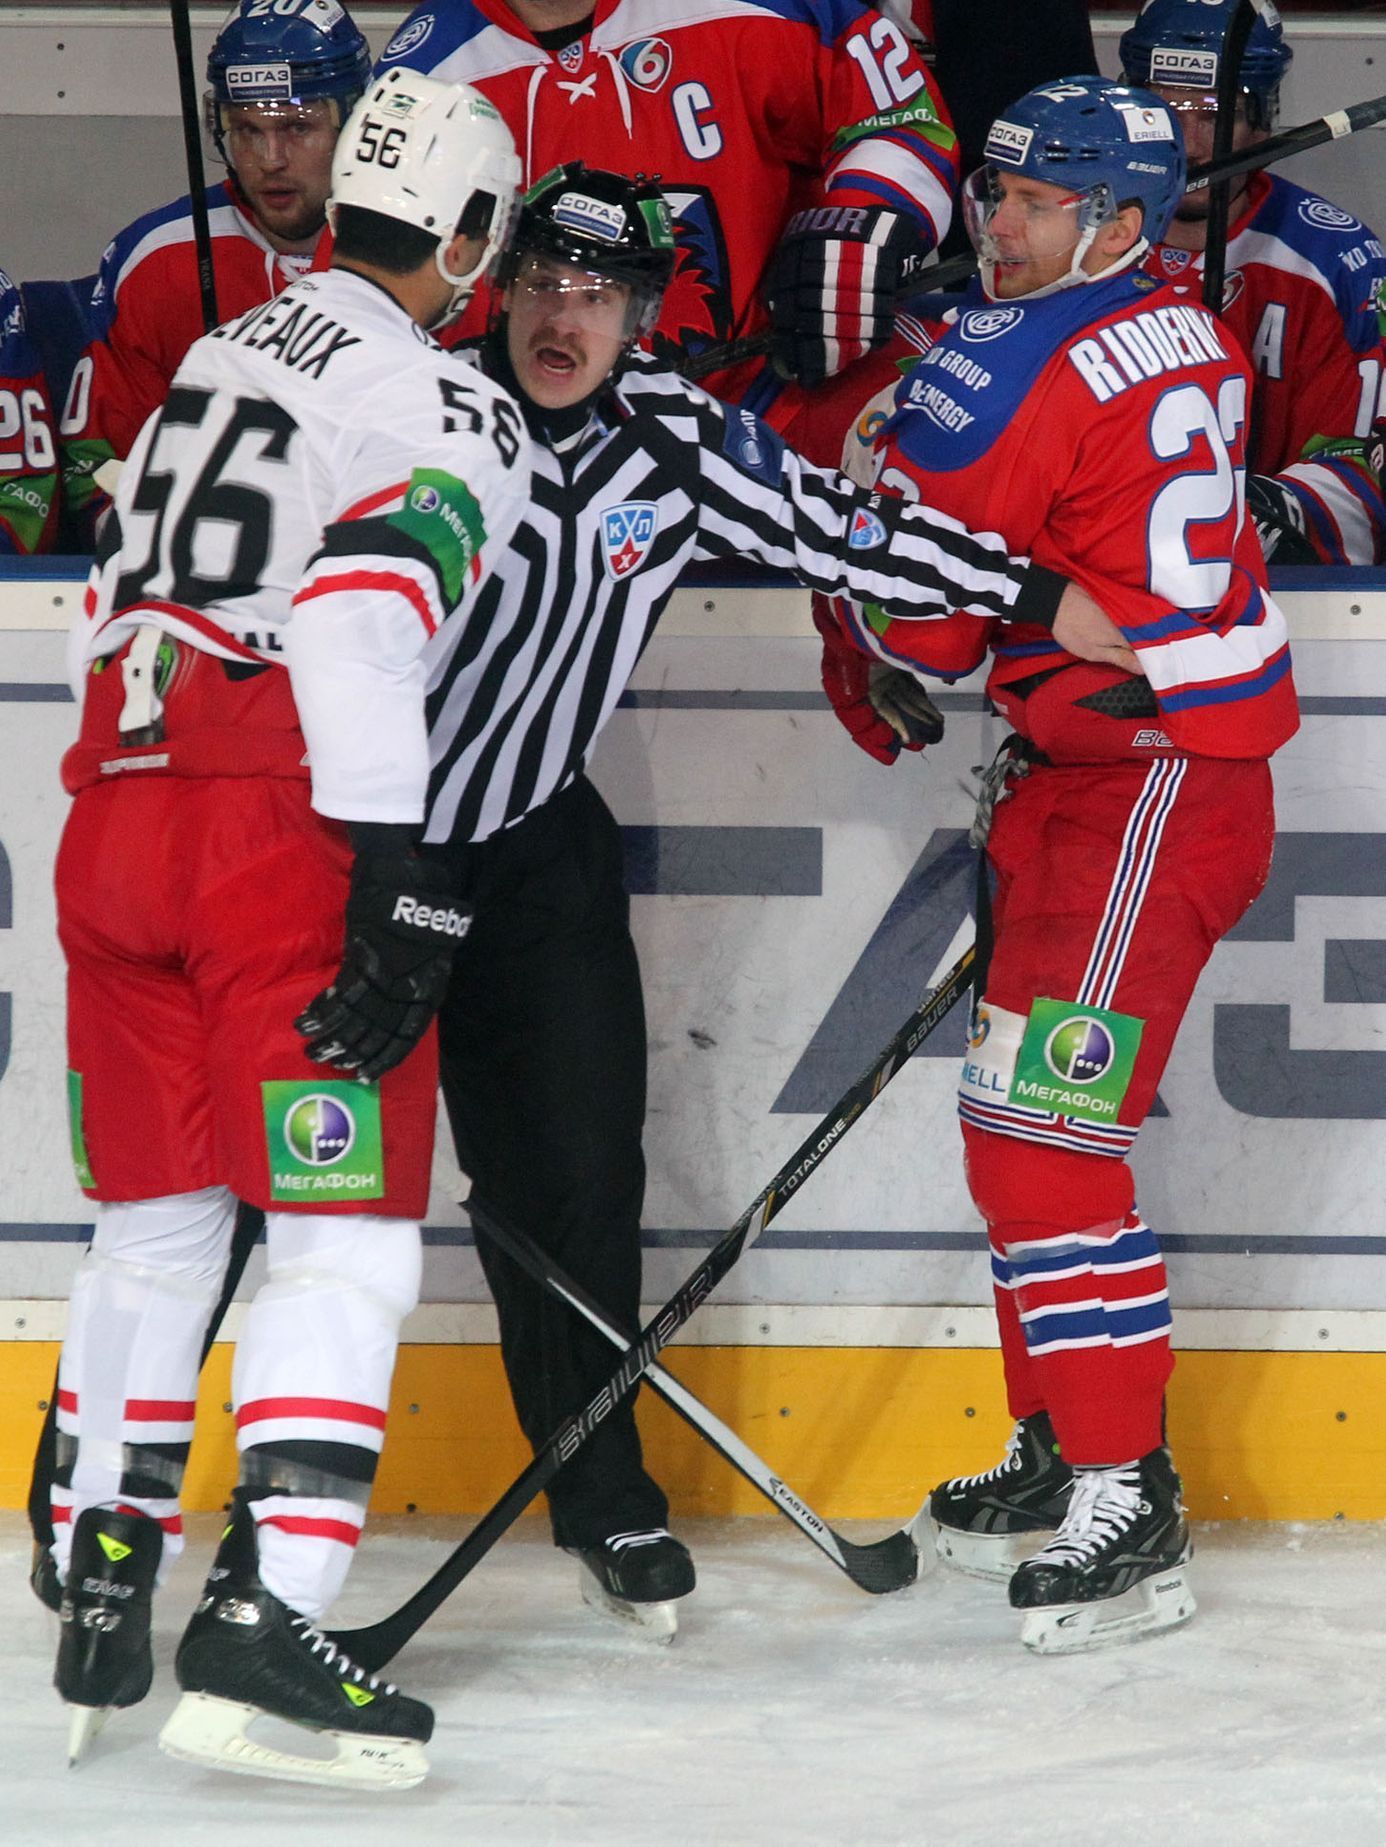 KHL, Lev Praha - Jekatěrinburg: Calle Ridderwall - Andre Deveaux